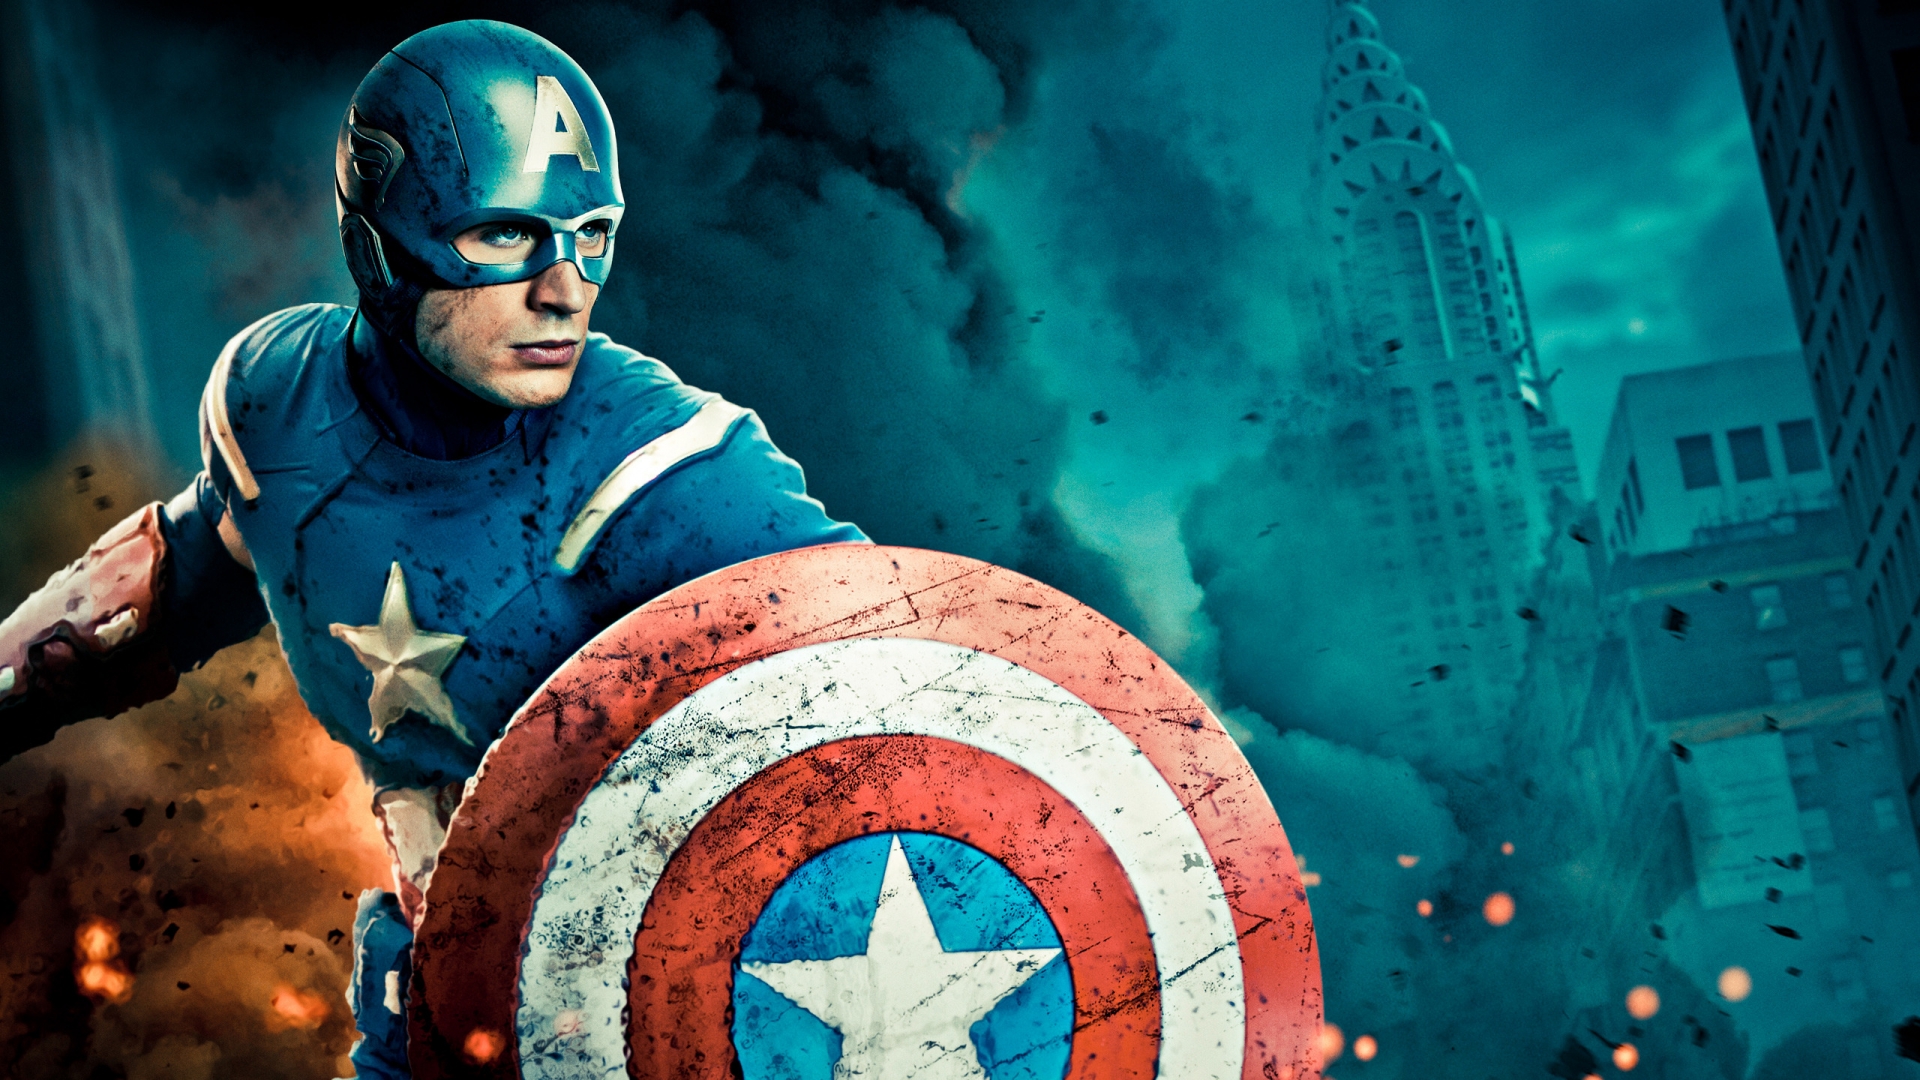 Captain America The Avengers for 1920 x 1080 HDTV 1080p resolution